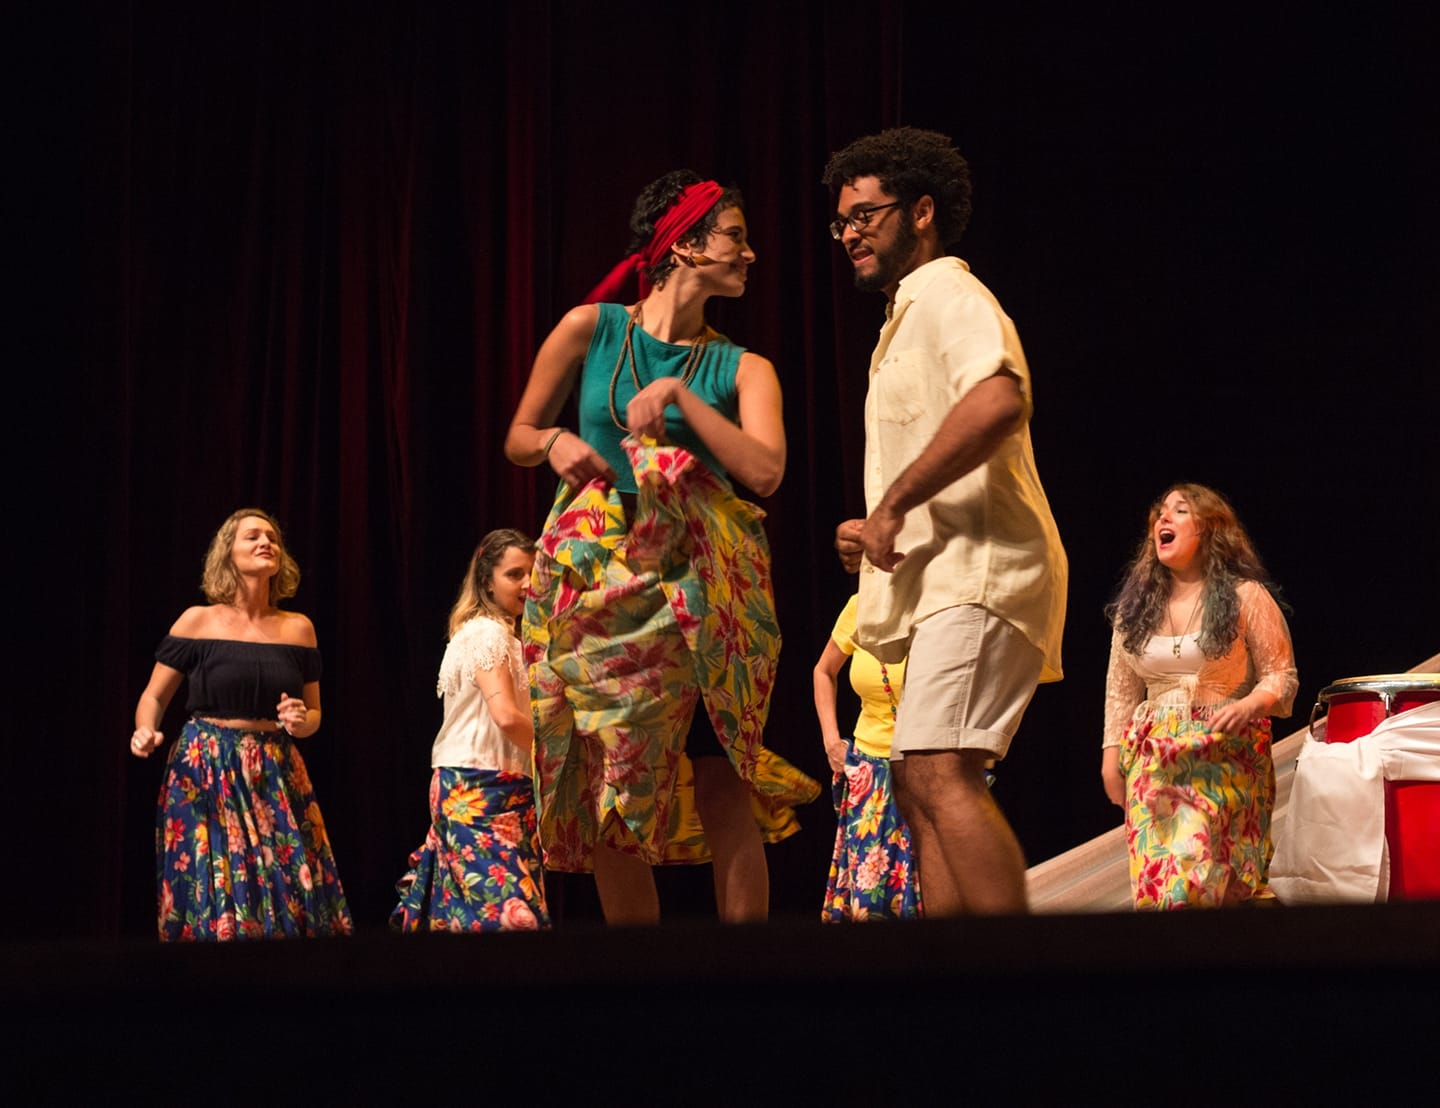 Fotografia colorida de integrantes do Coral Altivoz durante apresentação no Teatro Odylo Costa, filho.